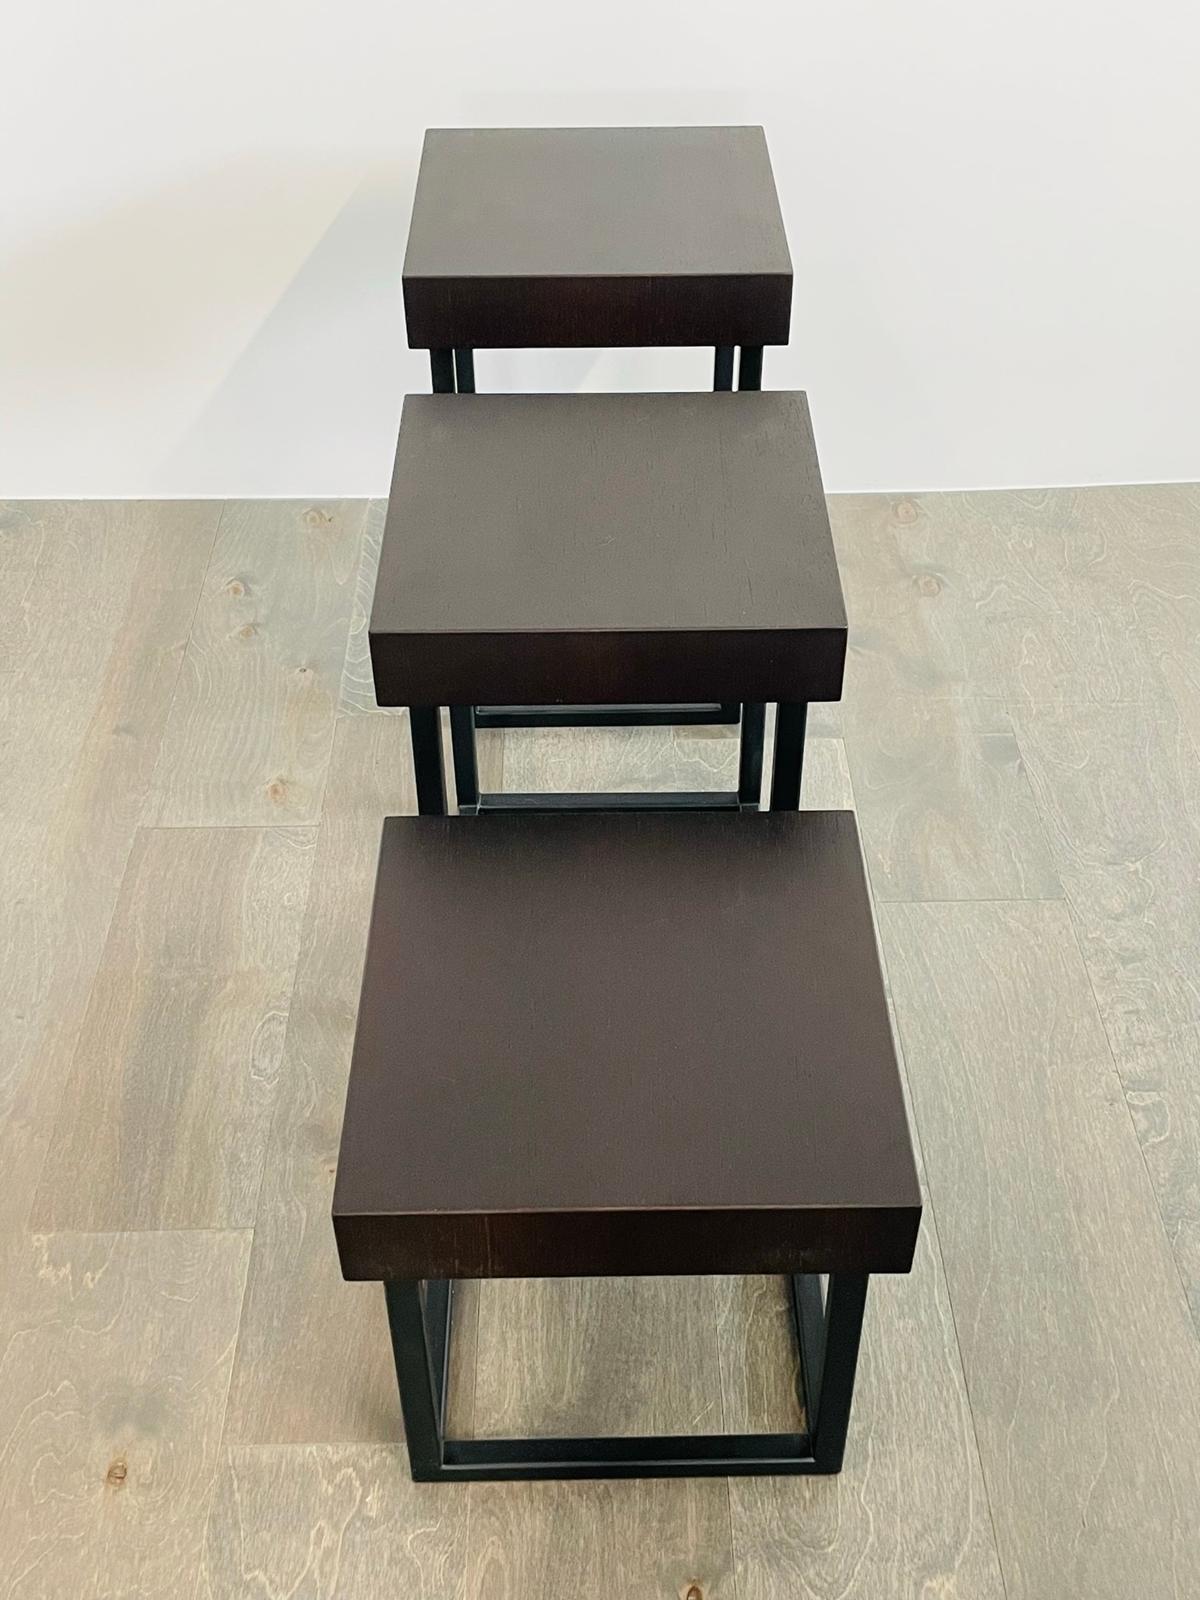 Entwurf: Cain Modern Studio
Design Jahr: 2023
Herkunftsland: USA

Wir präsentieren die atemberaubenden 3 Iron & Oak Side Tables, die von Cain Studio in den USA hergestellt werden. Diese mit viel Liebe zum Detail handgefertigten Tische verleihen